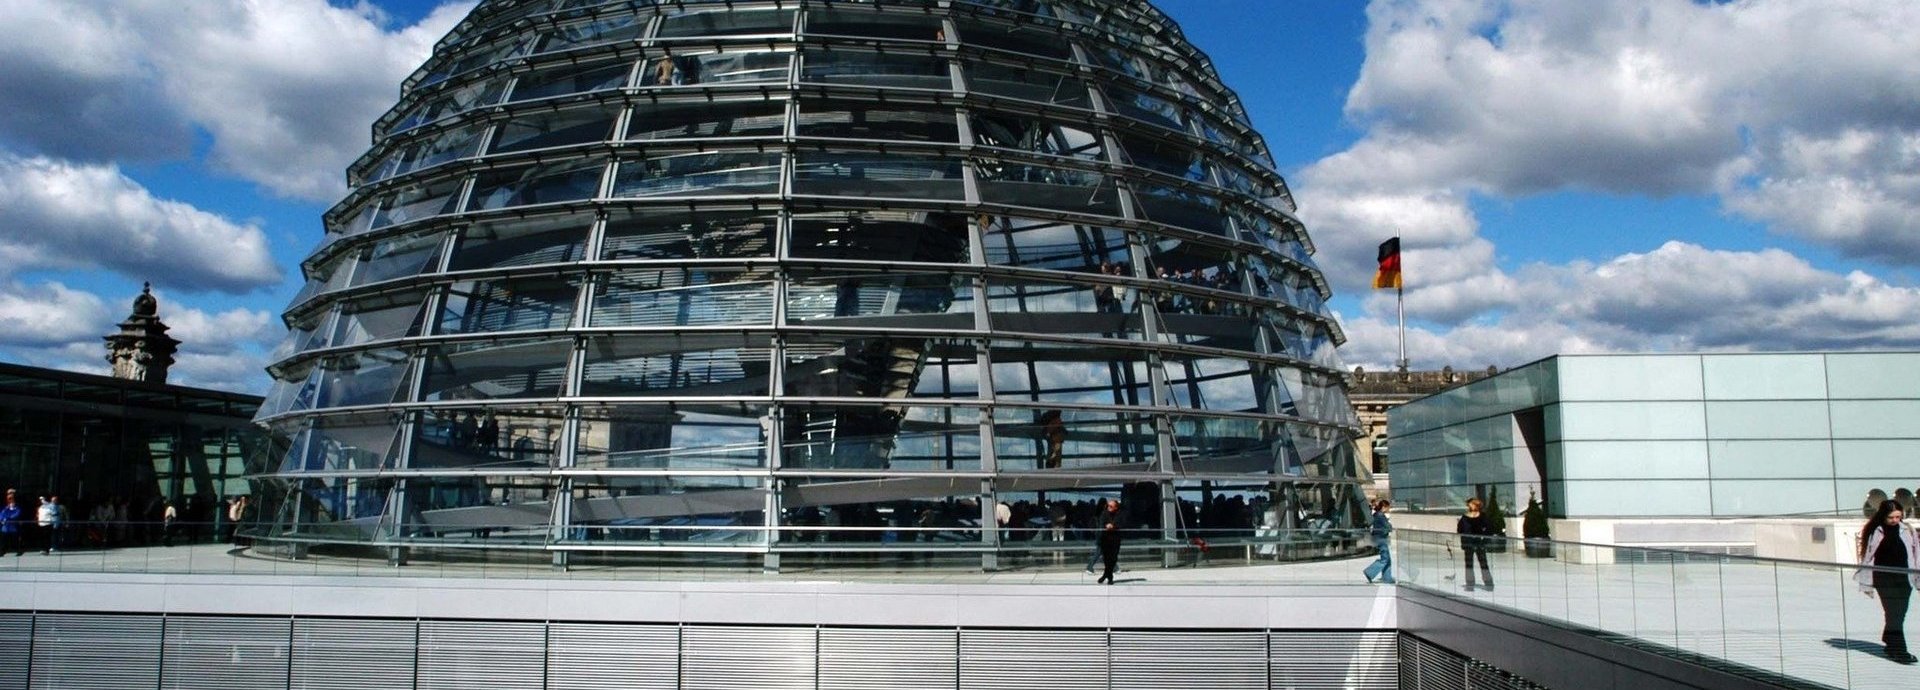 Die Glaskuppel des deutschen Bundestages vor einem leicht bewölkten dunkelblauem Himmel